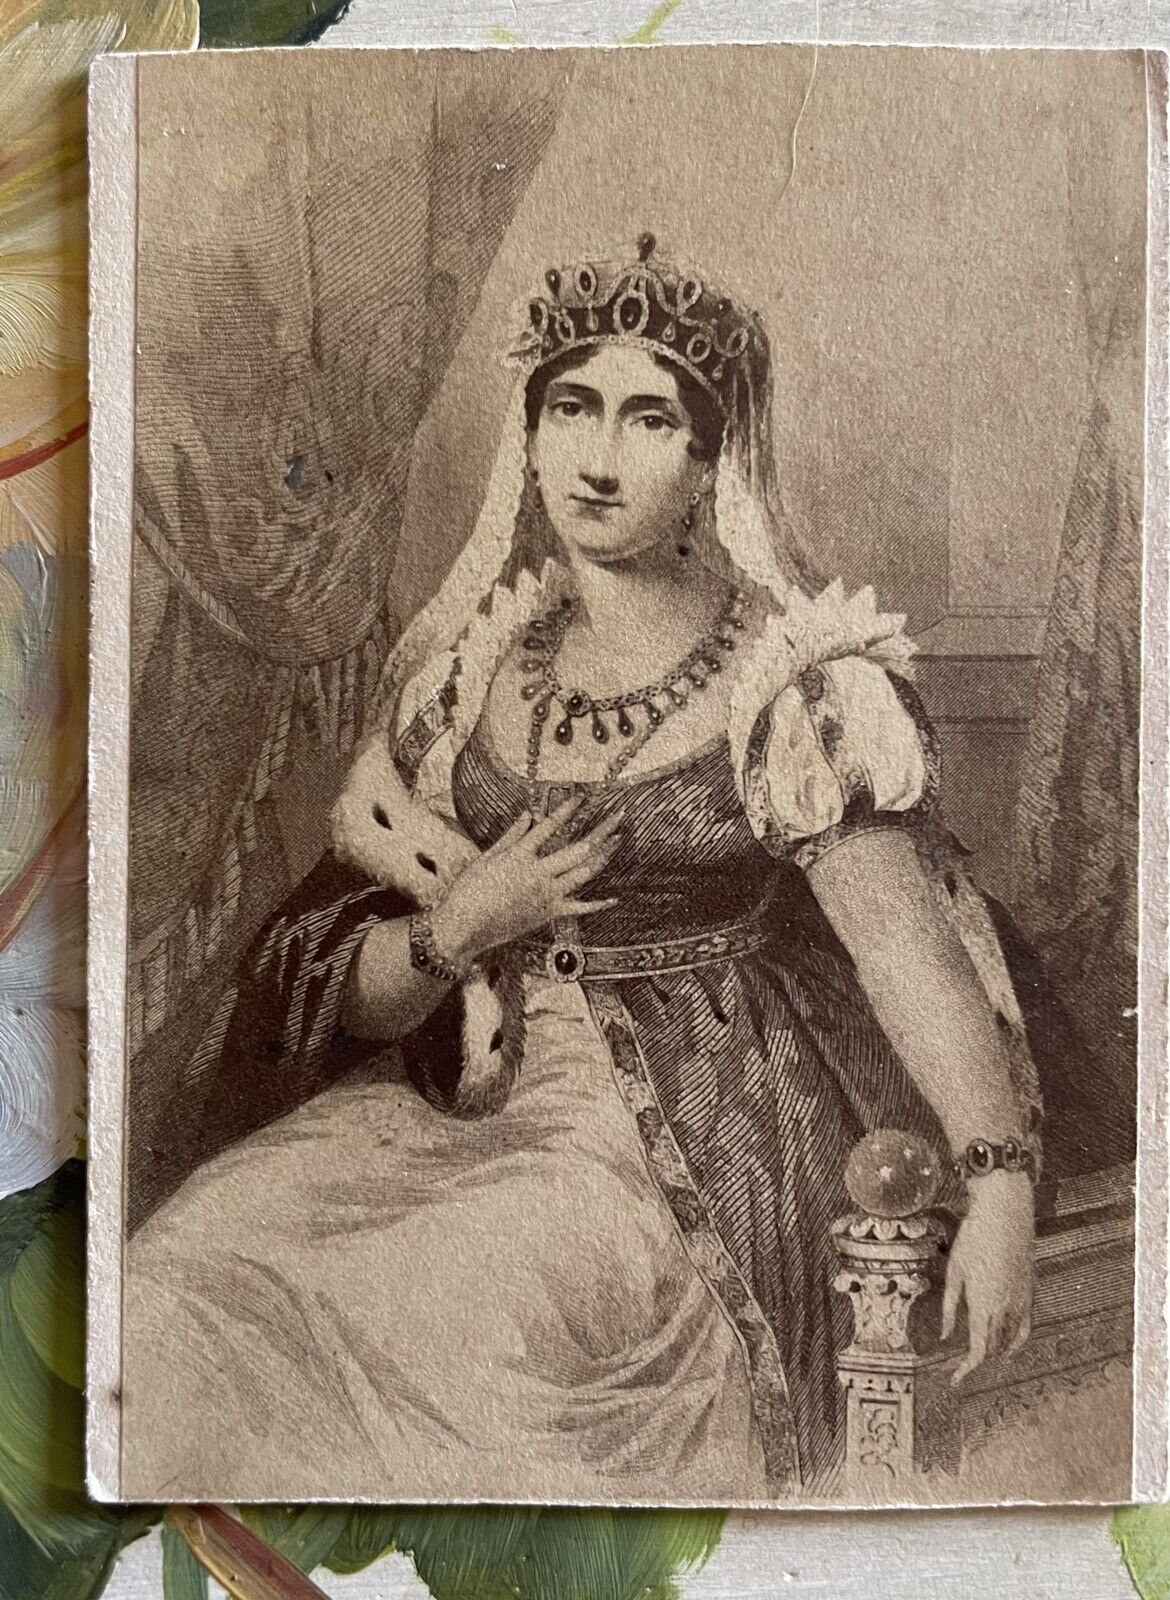 Cdv Josephine de Beauharnais Bonaparte Empress of France O’Brien Chicago